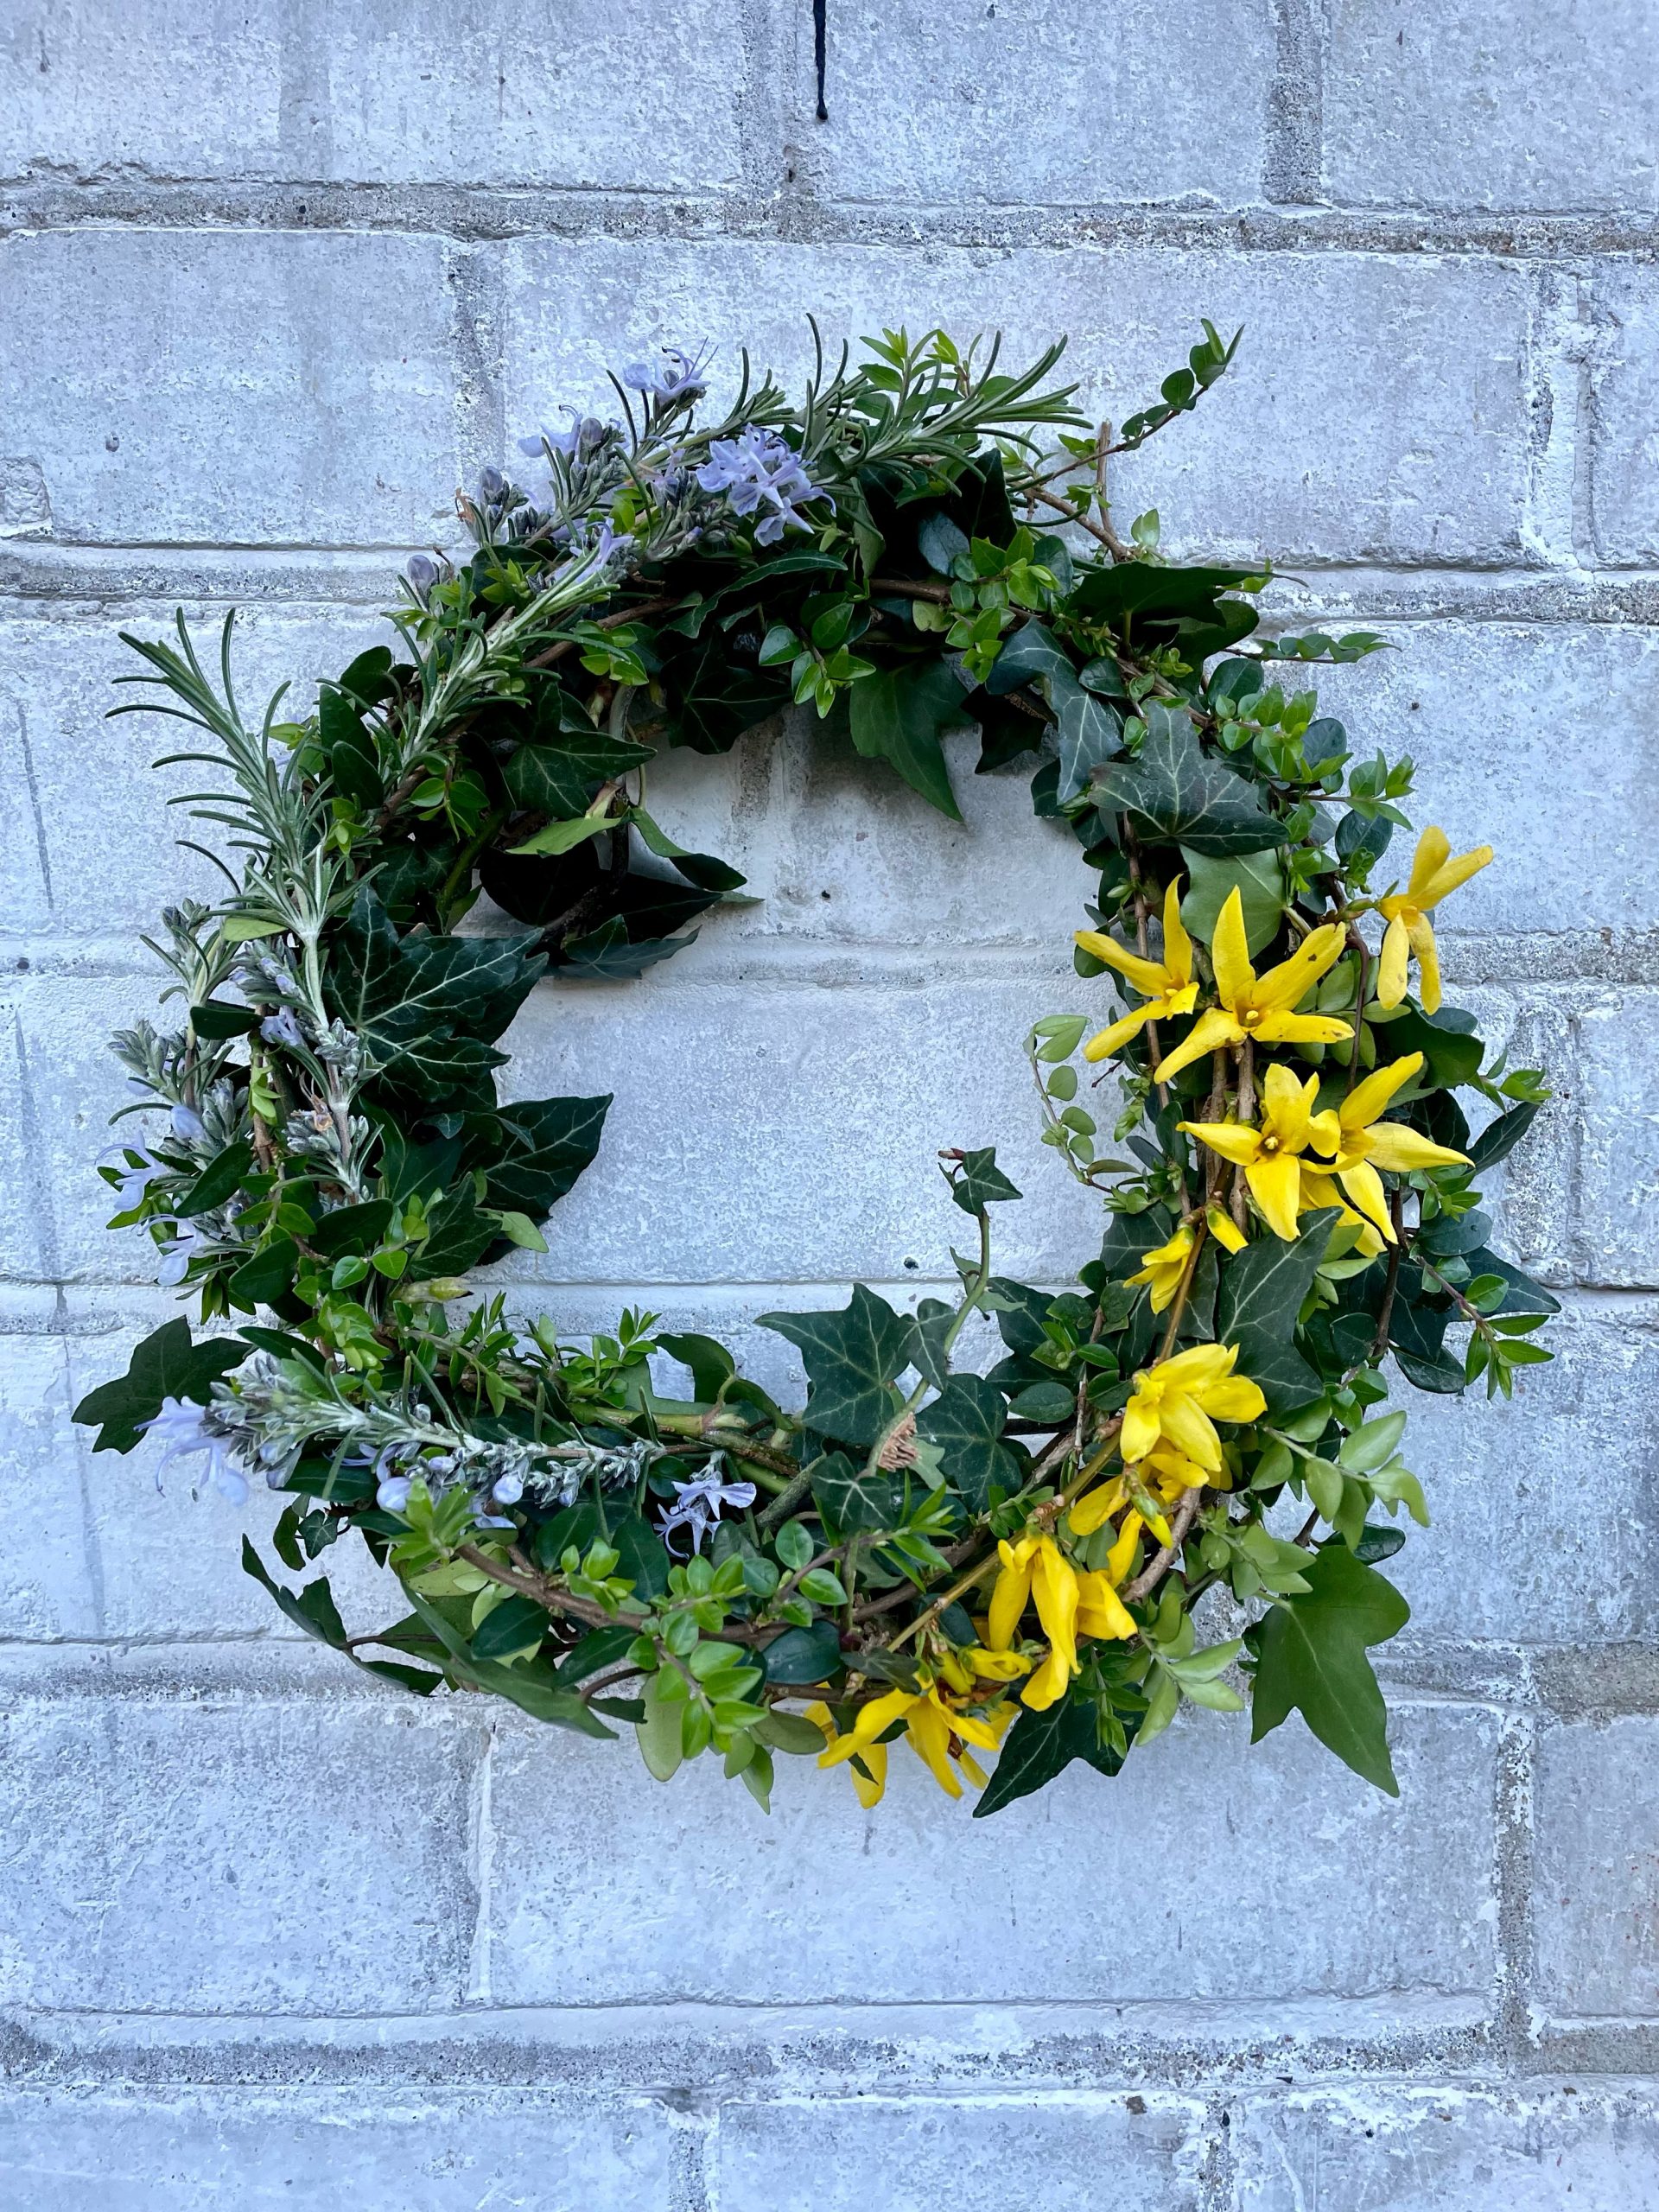 Aldgate Gardening Club – Spring Wreaths Workshop